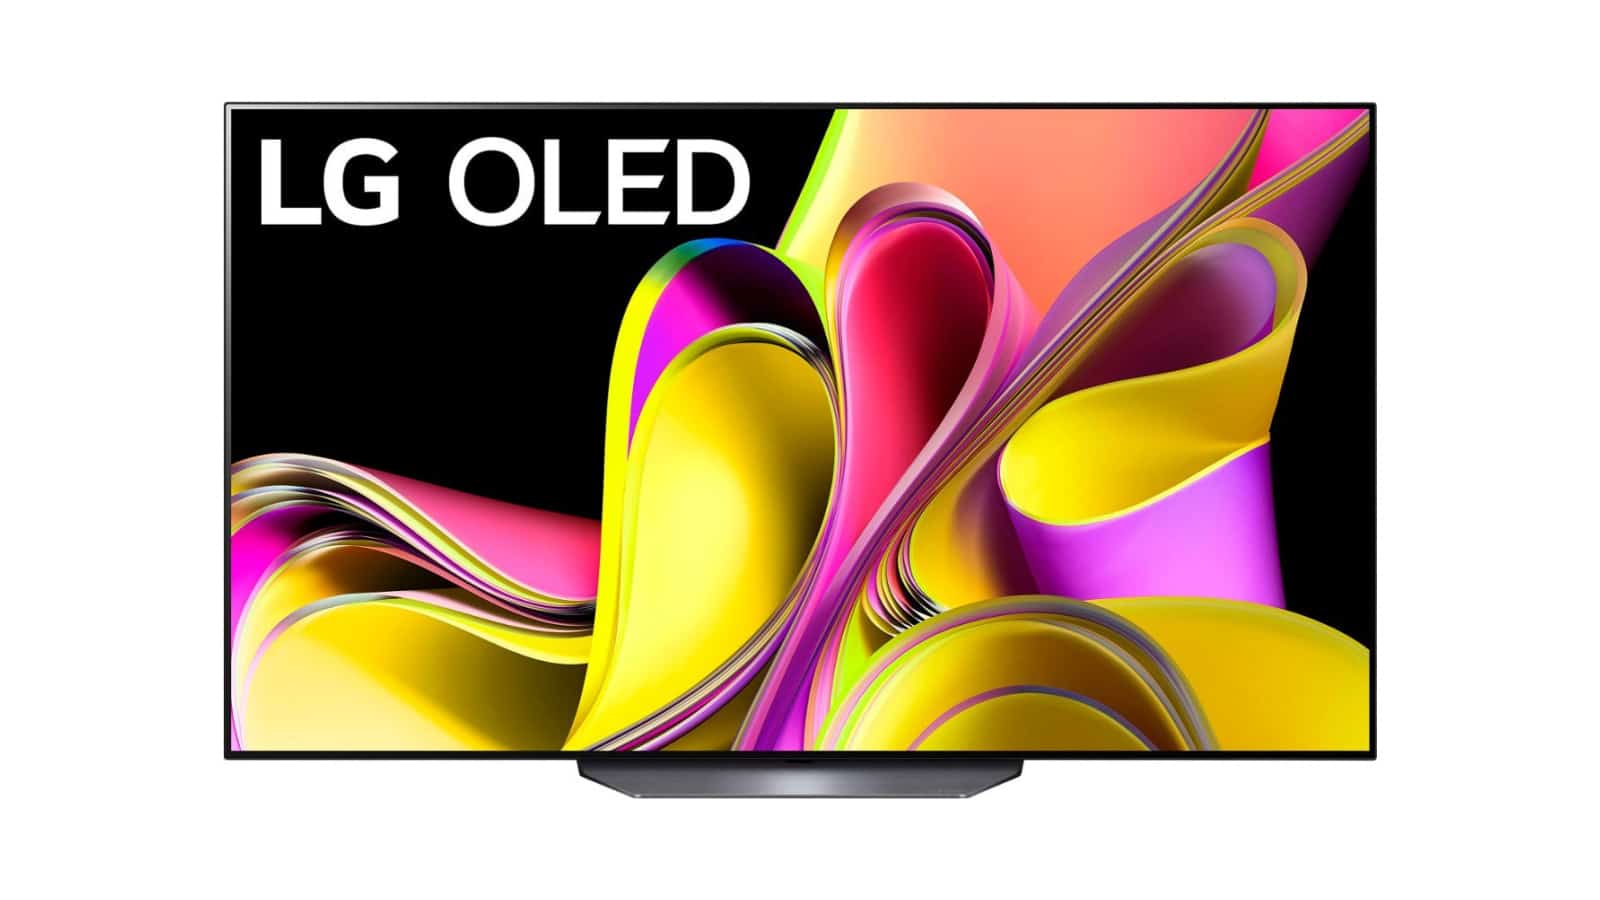 Uno de los mejores televisores OLED de LG ahora tiene un descuento de $ 700